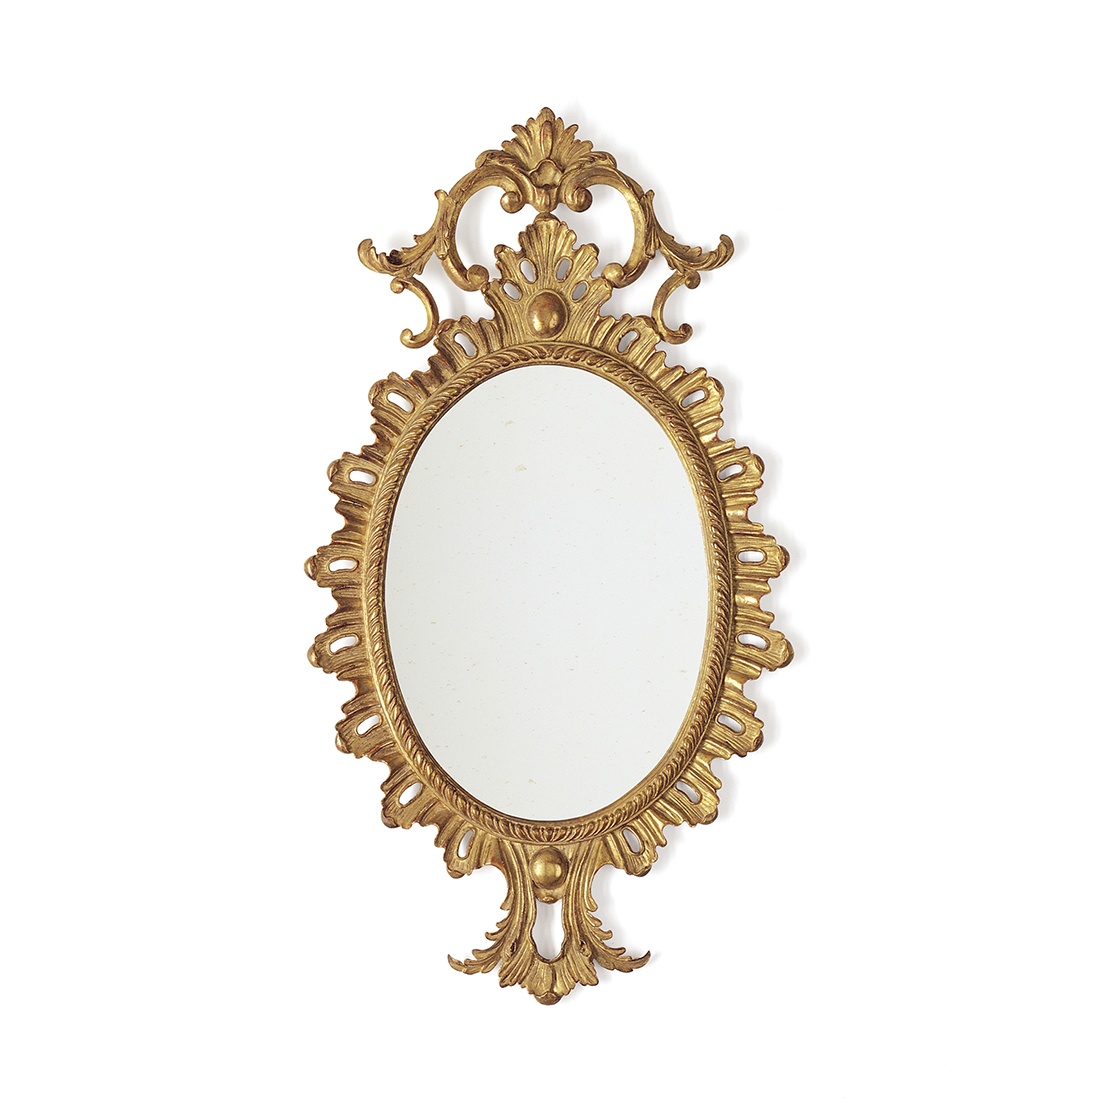 Belgrave mirror in Venice gold - Beaumont & Fletcher